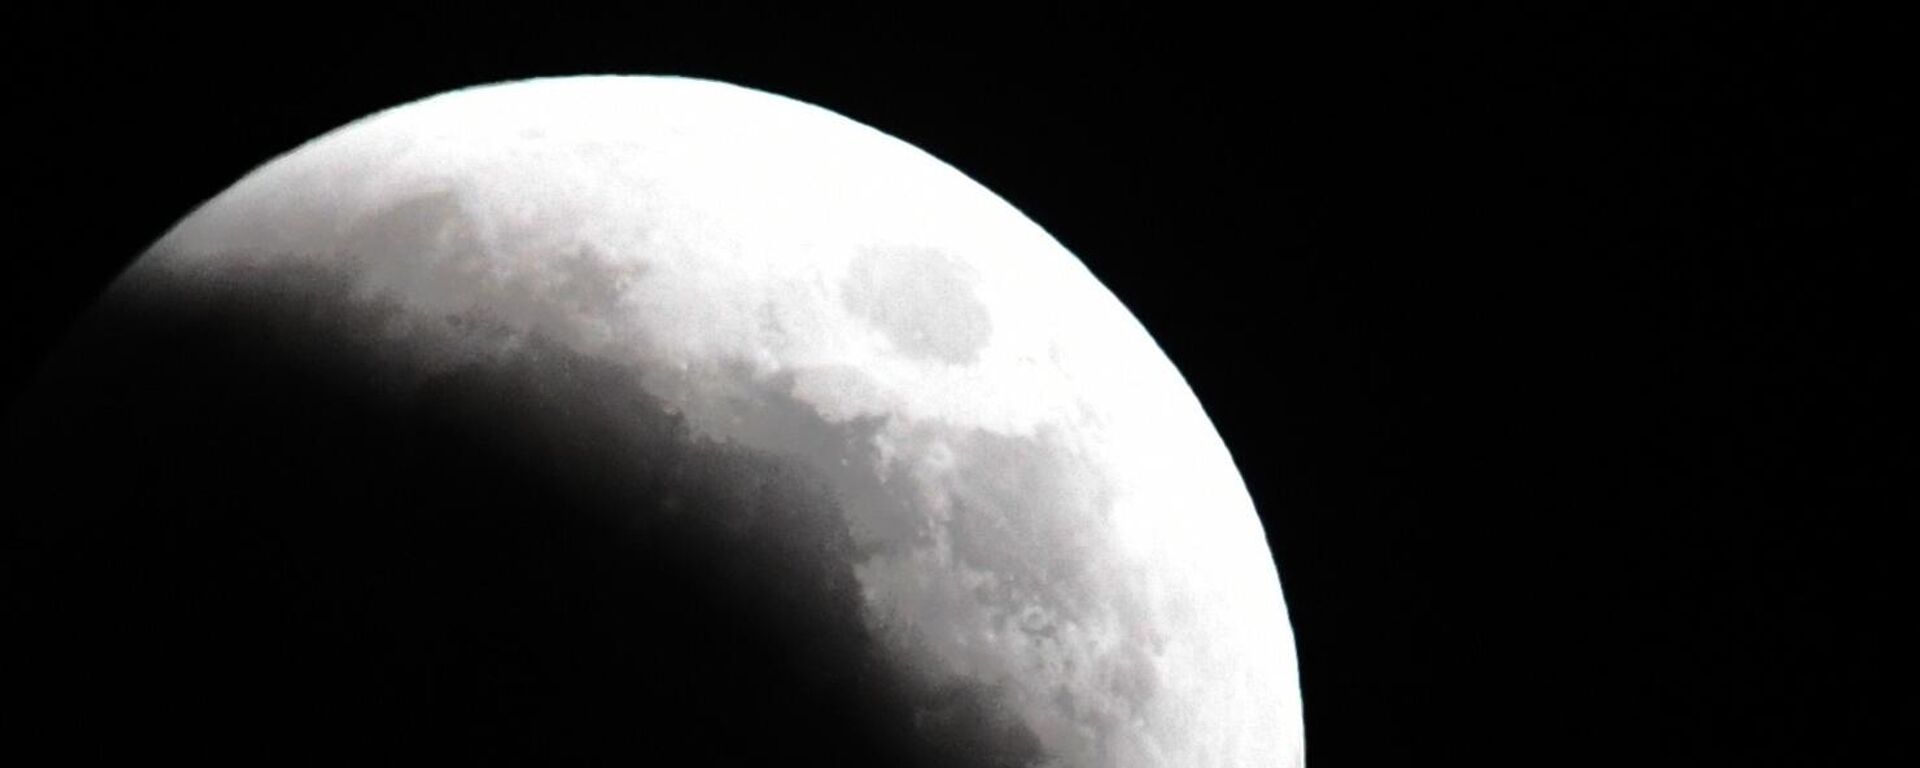 القمر خلال الكسوف في فلاديفوستوك الروسية. في 8 نوفمبر، بعد الظهر، سيُغطى القمر جزئيًا بظل الأرض، وسيغطي القمر أورانوس ويتحول إلى اللون الأحمر القرمزي (القمر الدموي). سيكمل هذا الحدث ممر الكسوف الذي بدأ في أكتوبر/ تشرين الأول. في المرة القادمة يمكن رؤية هذه الظاهرة فقط في غضون سنوات قليلة. - سبوتنيك عربي, 1920, 03.02.2023